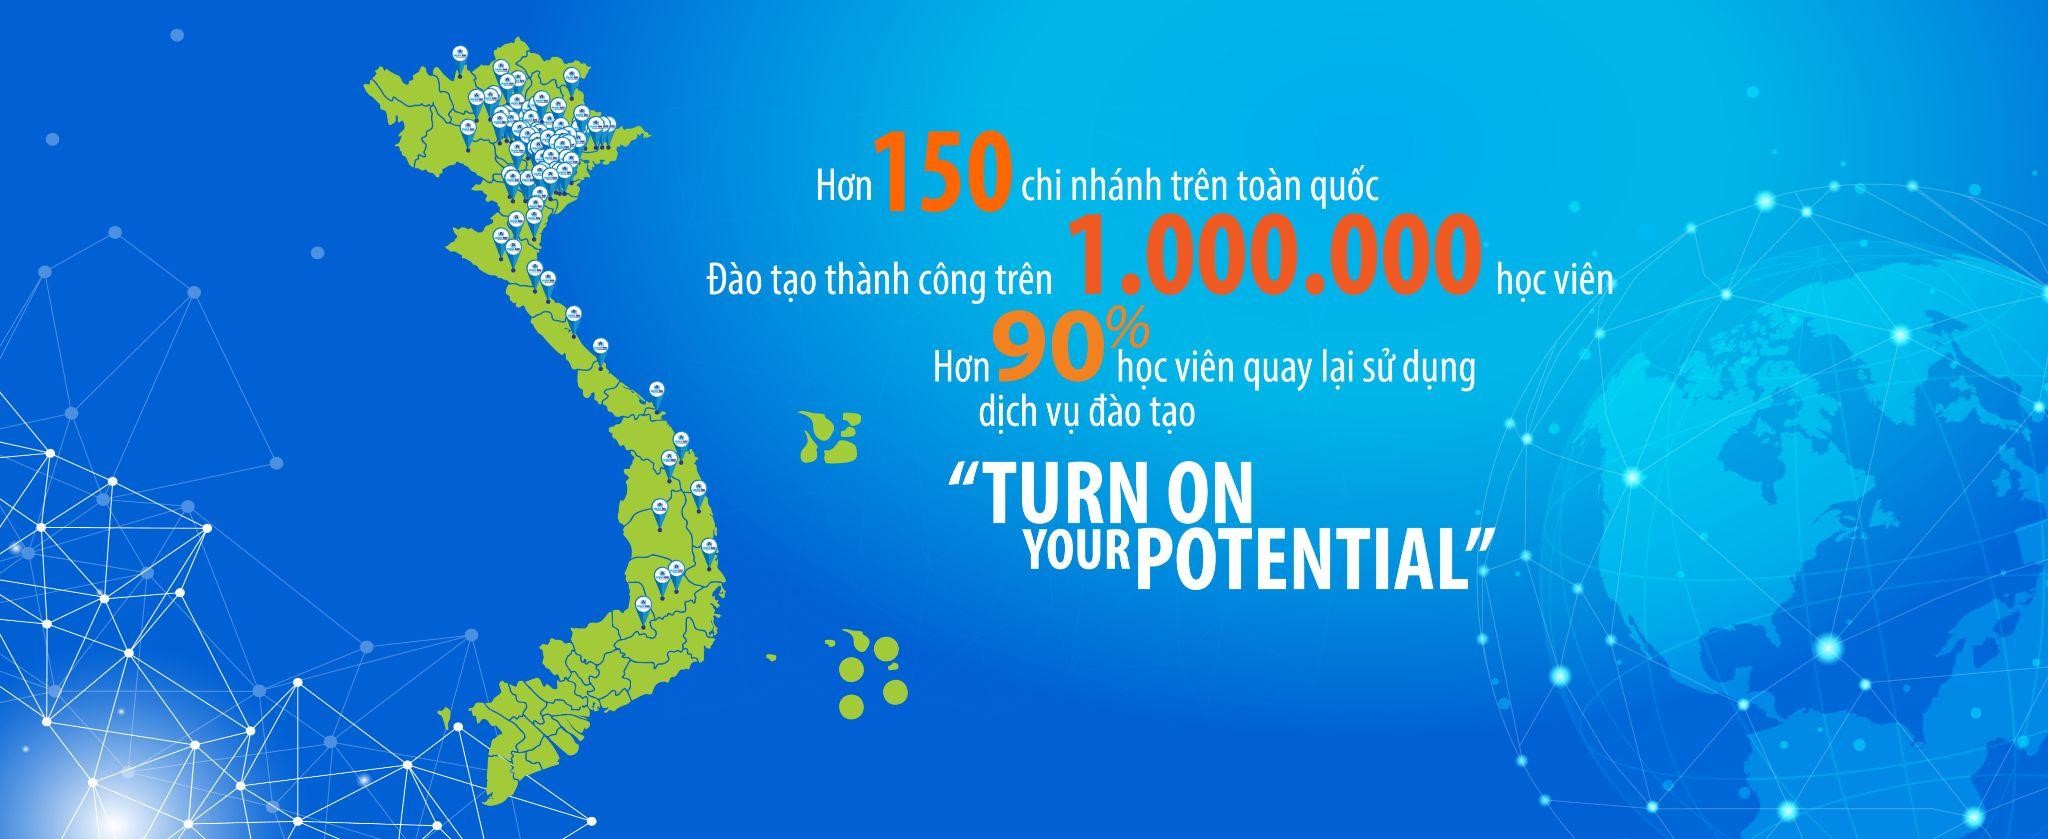 Ocean Edu - Tự hào mang trên mình sứ mệnh lan tỏa tri thức, giúp hàng triệu người Việt giỏi tiếng Anh